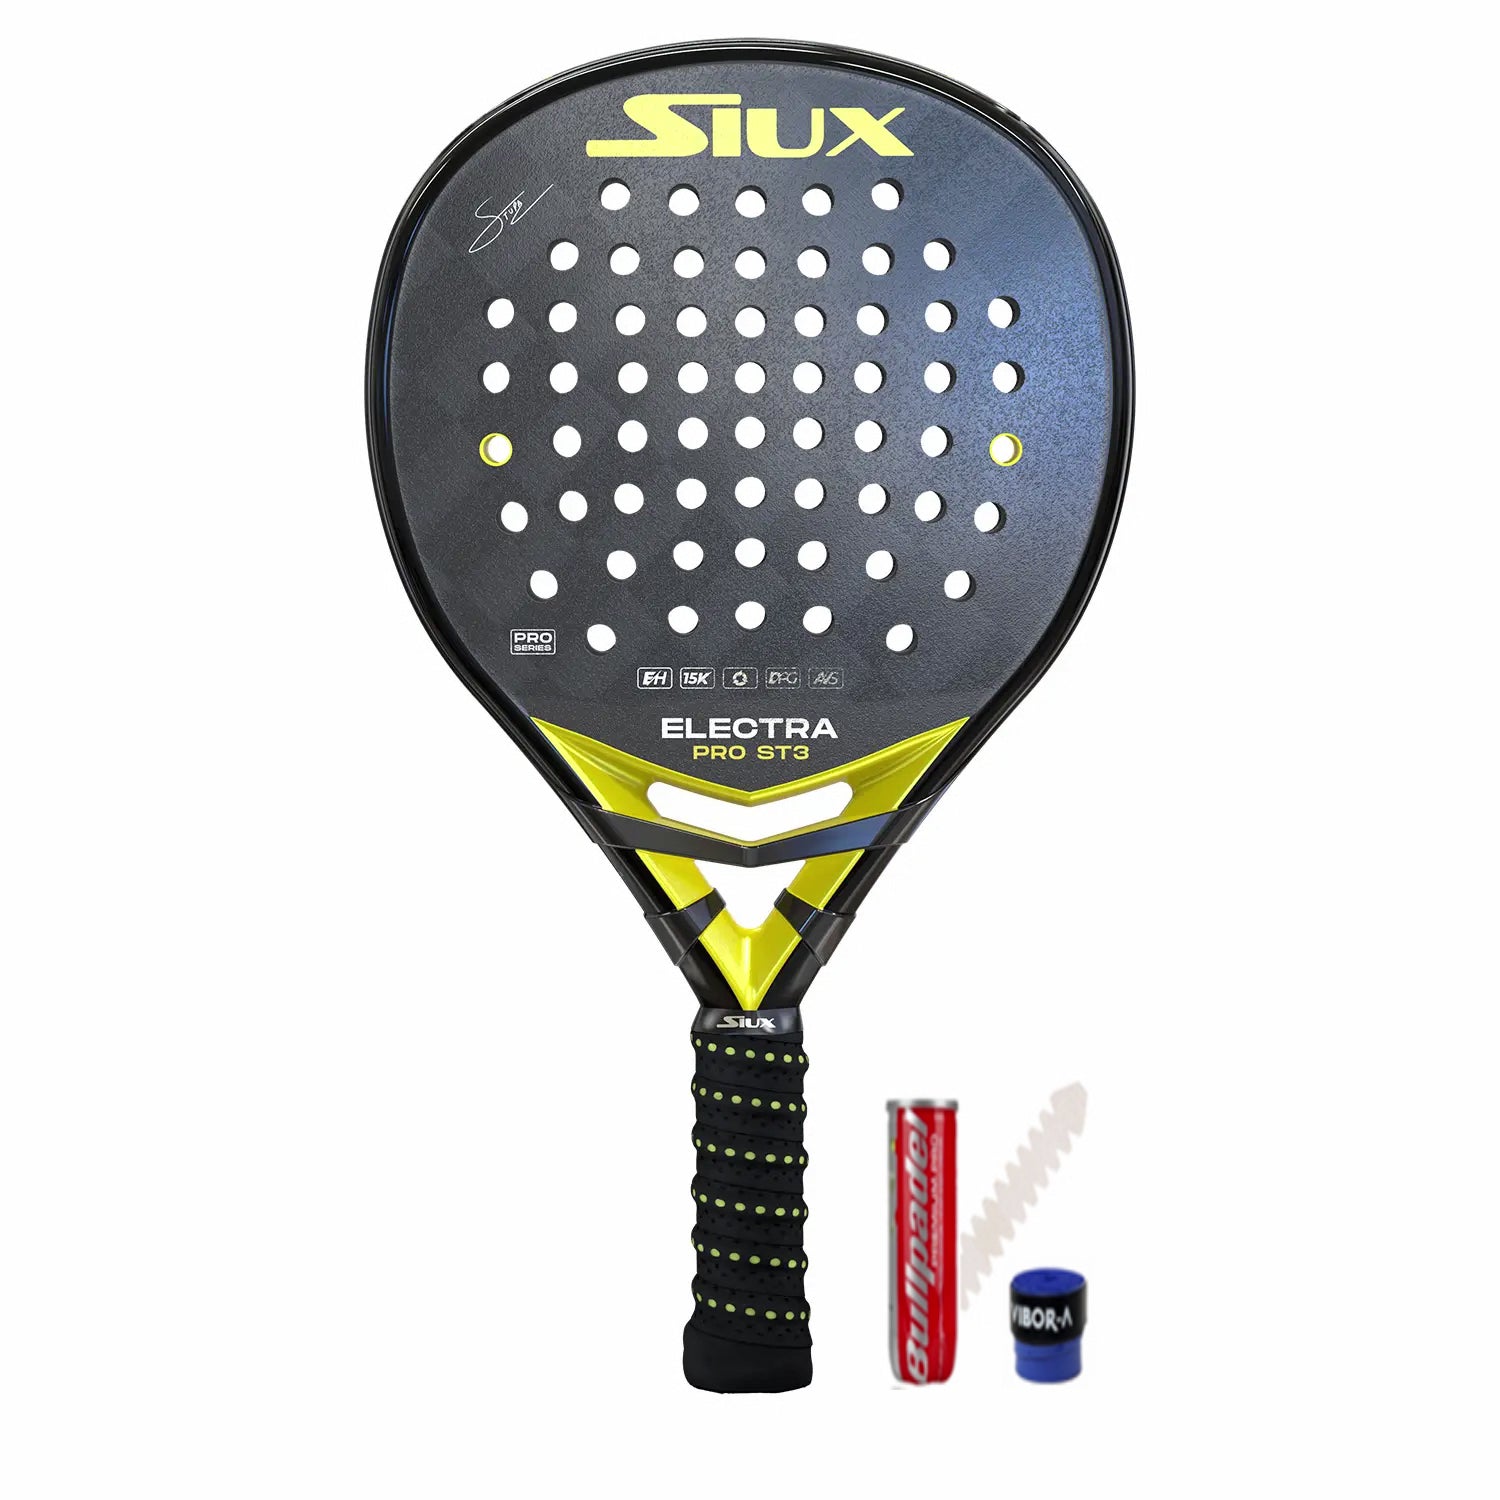 Siux Electra ST3 Stupa Pro padel racket